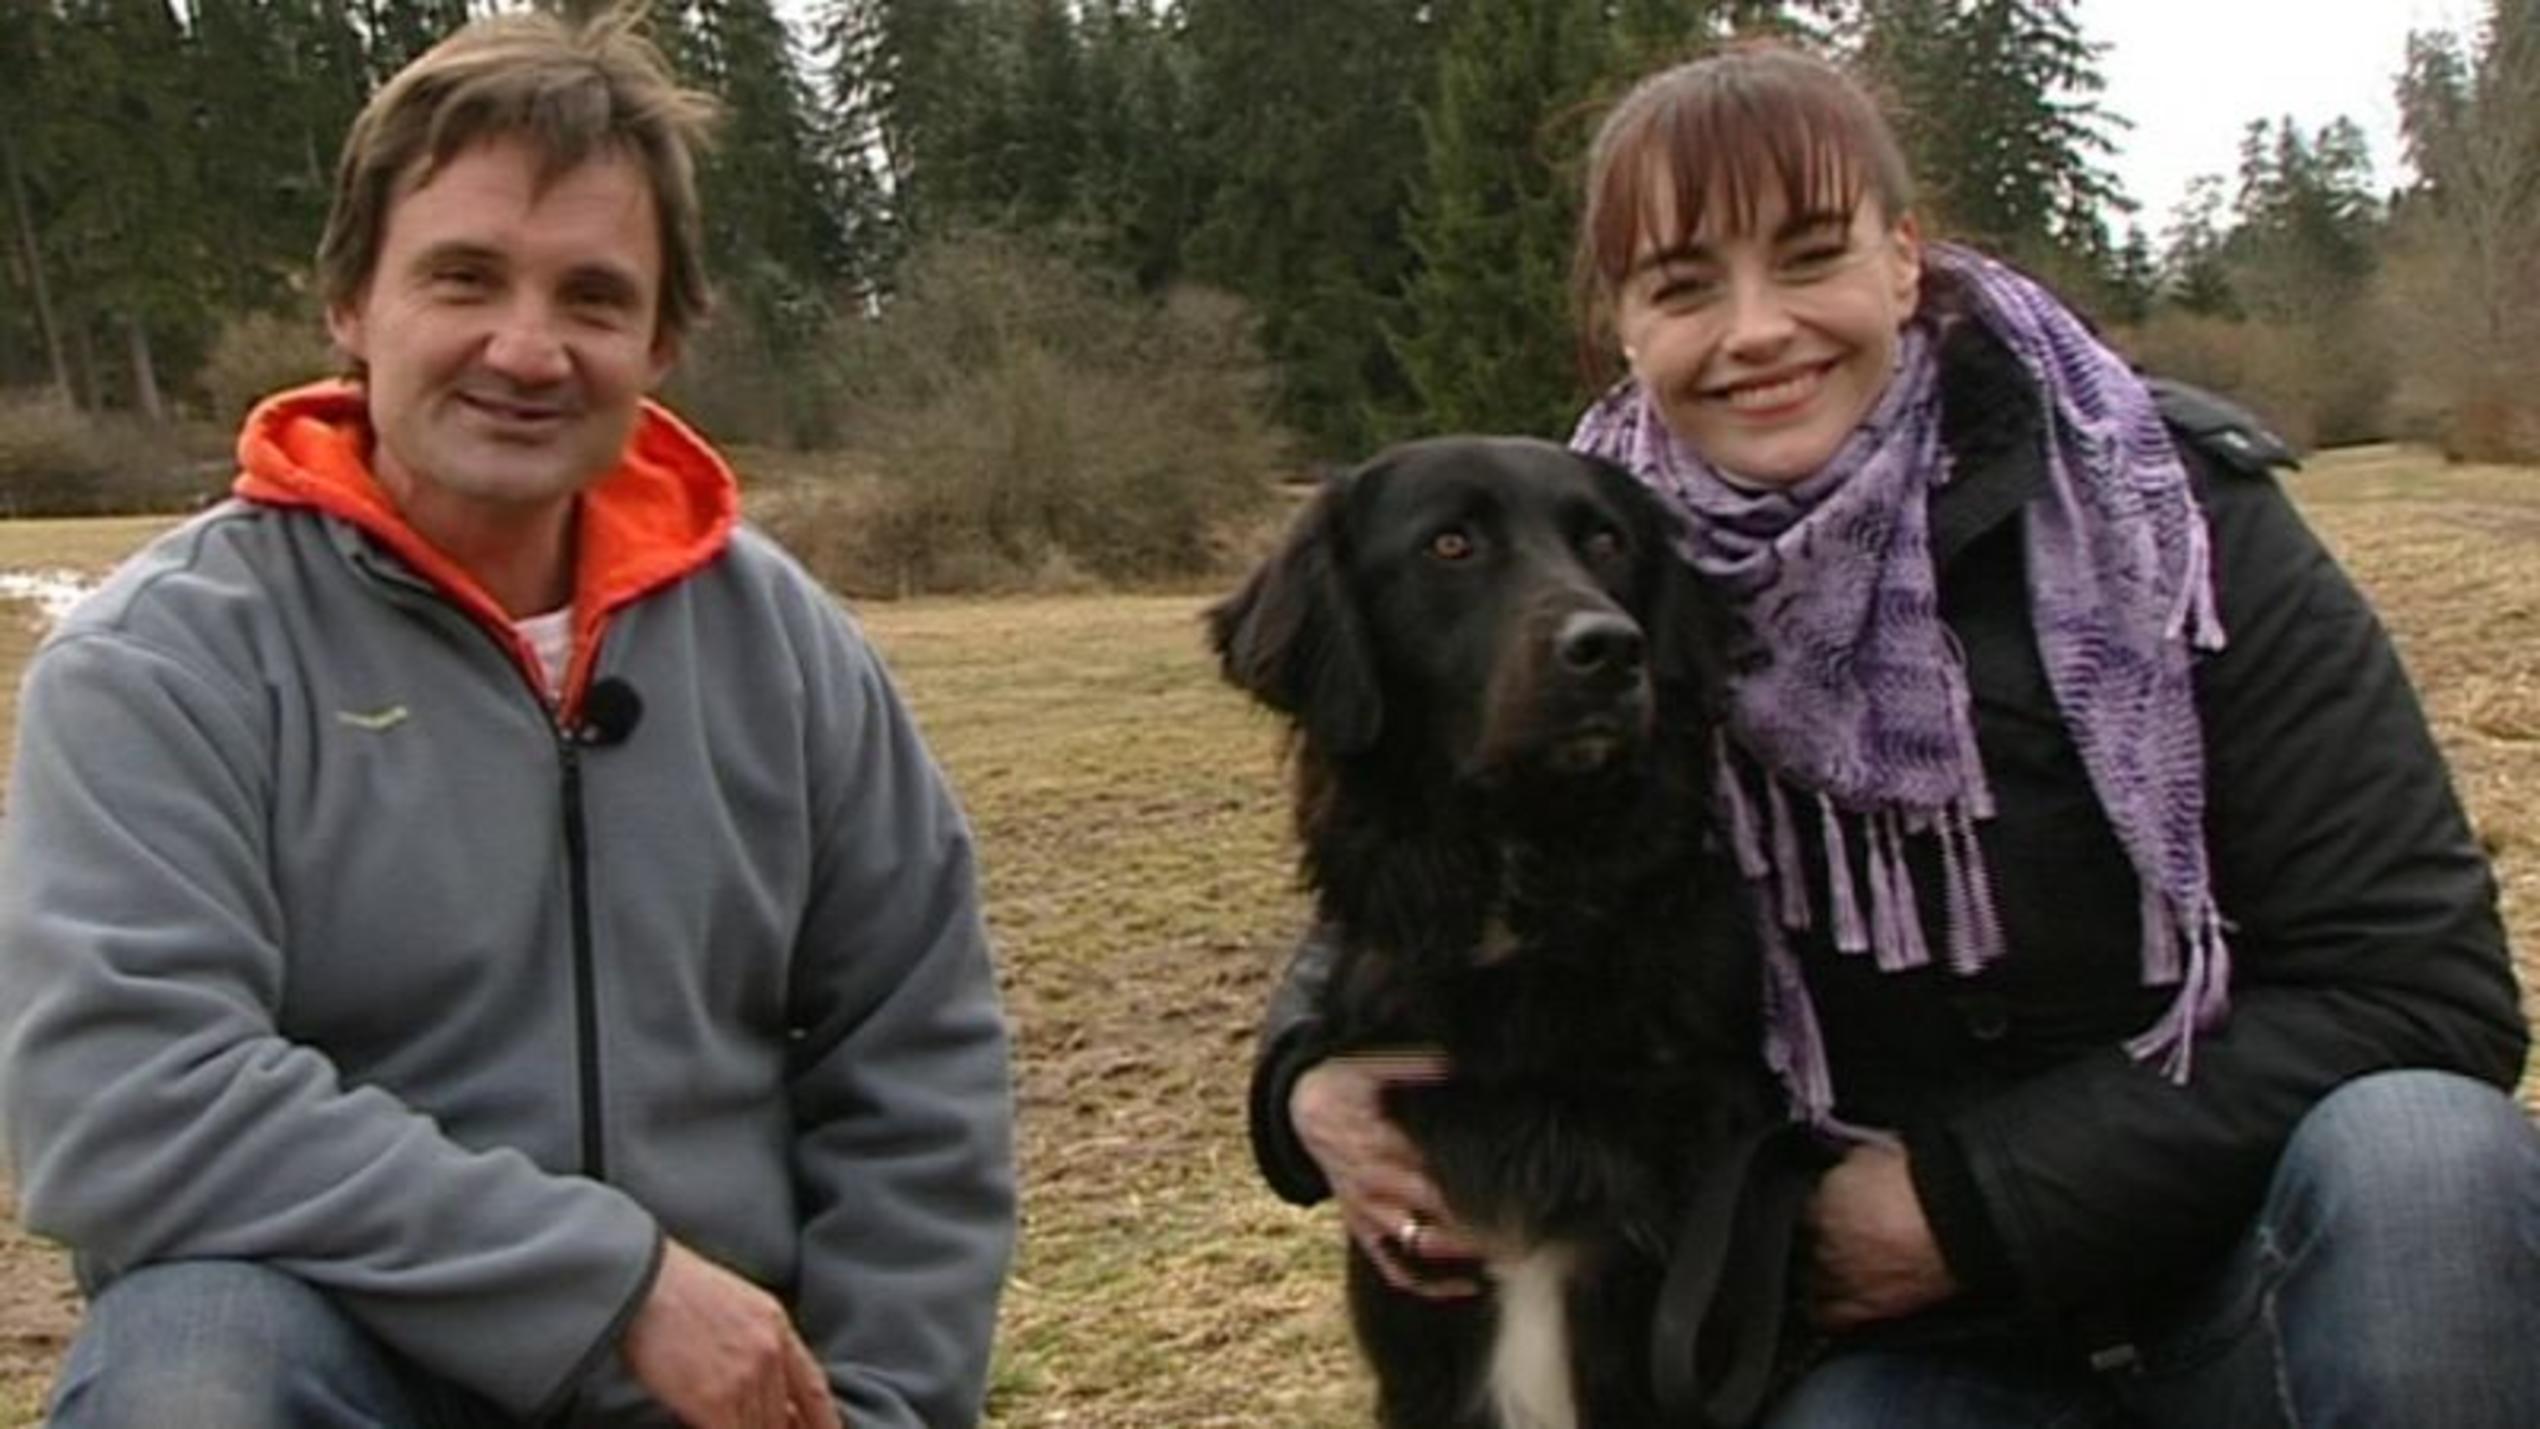 hundkatzemaus-Reporterin Diana Eichhorn mit Hundetrainer Uwe Friedrich. Foto: VOX/VP